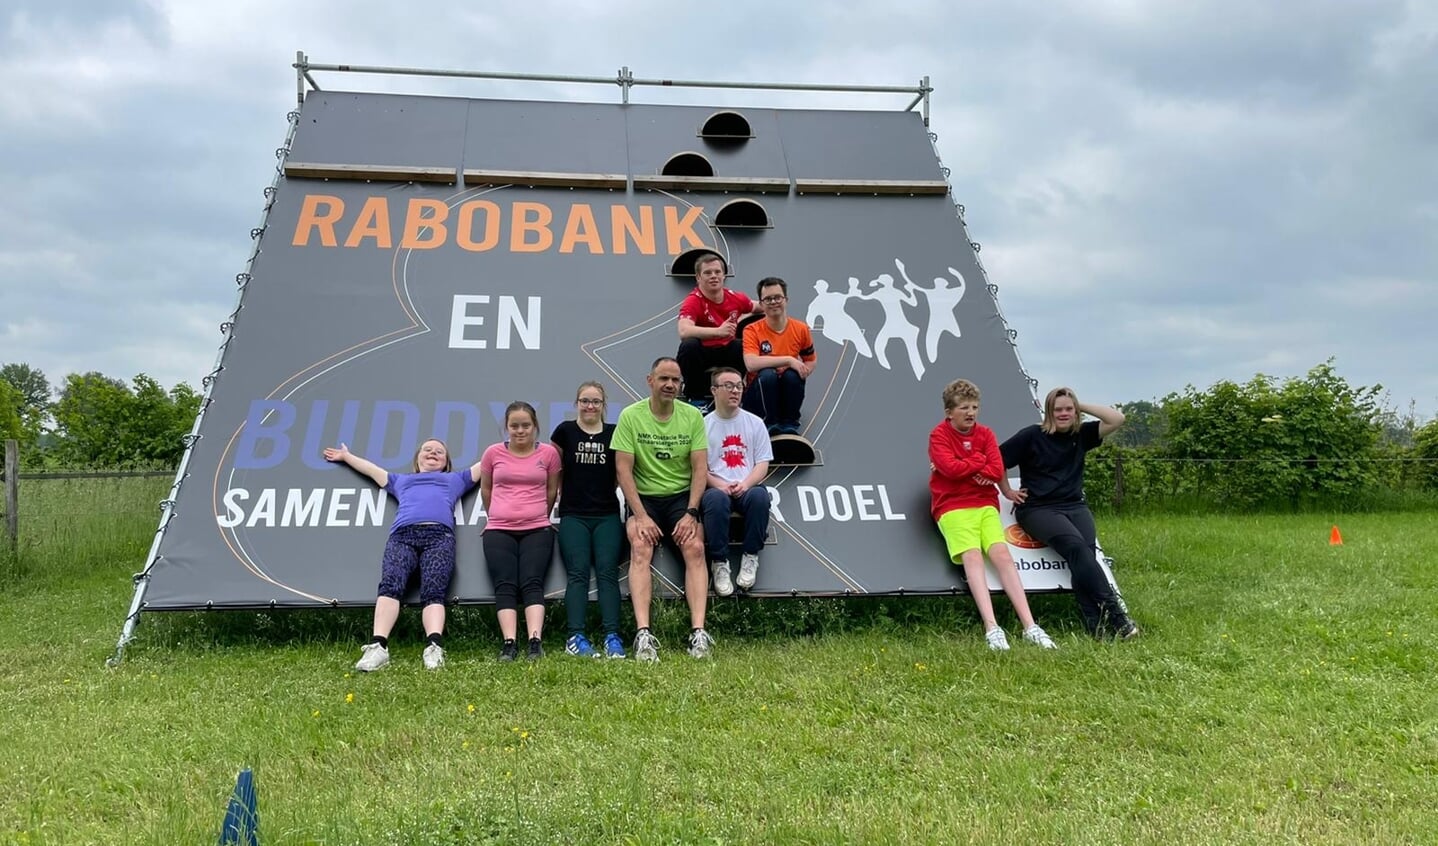 De Rabobank Teamwall op de trainingslocatie in Halle, die ook bij de Buddyrun wordt ingezet. Foto: PR